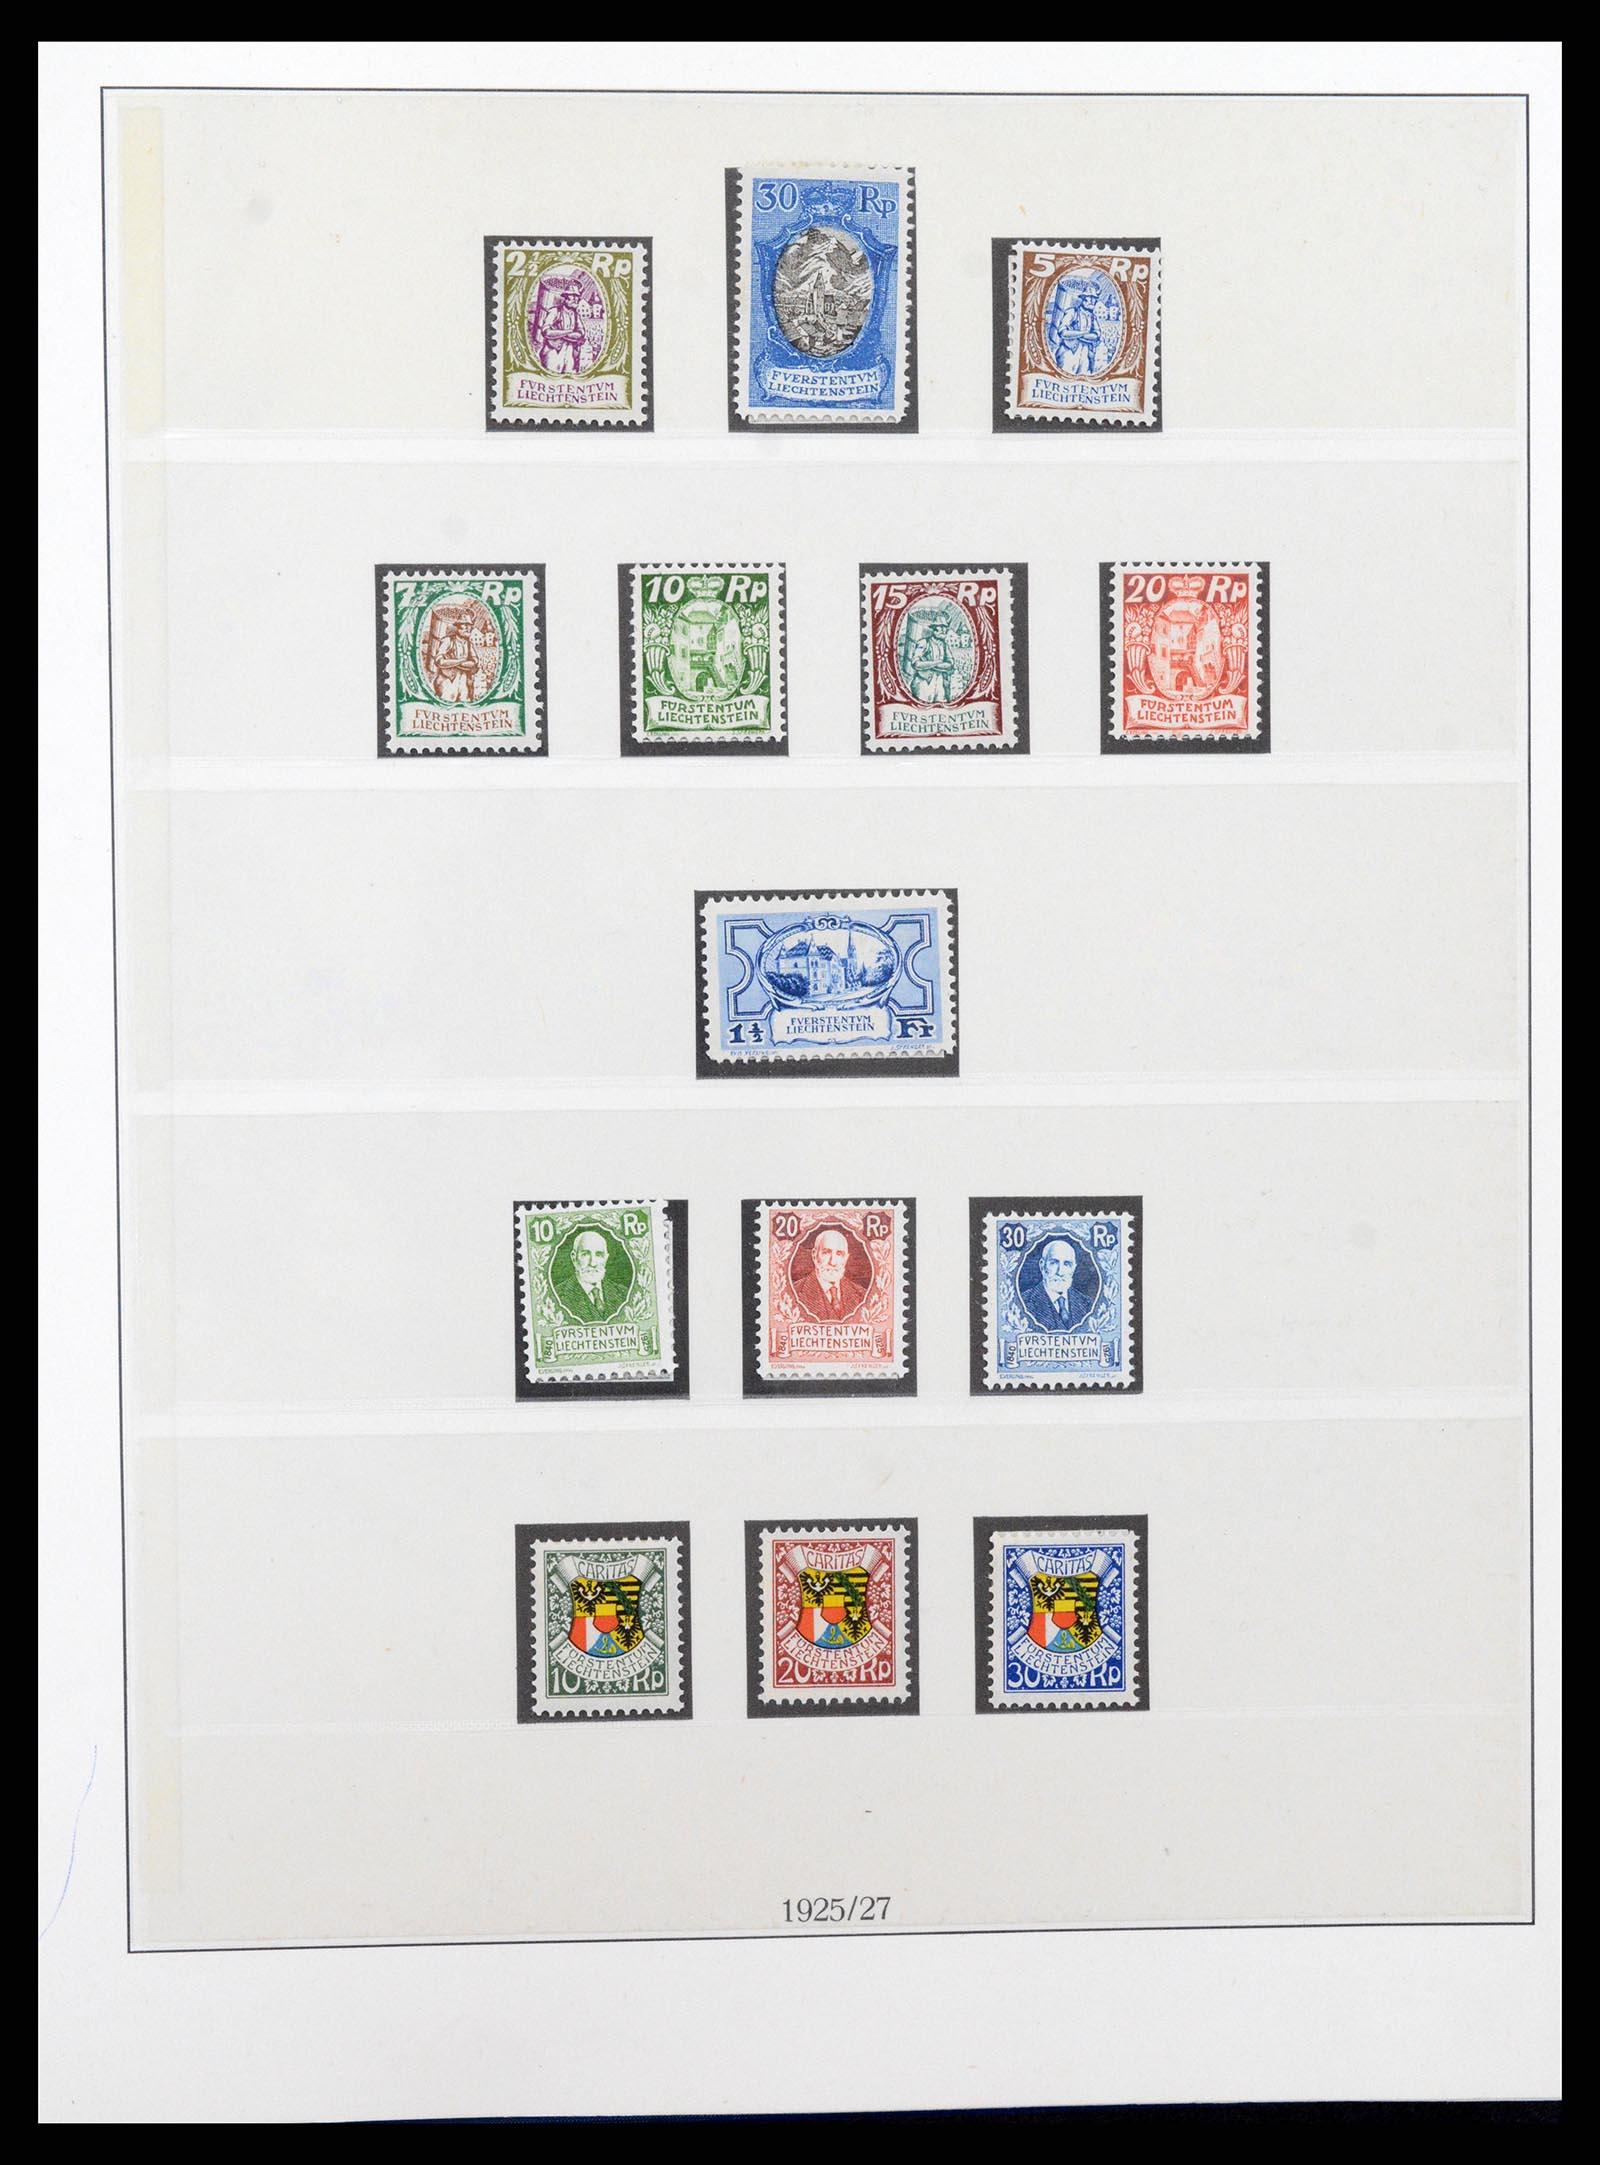 37295 007 - Stamp collection 37295 Liechtenstein 1912-2009.